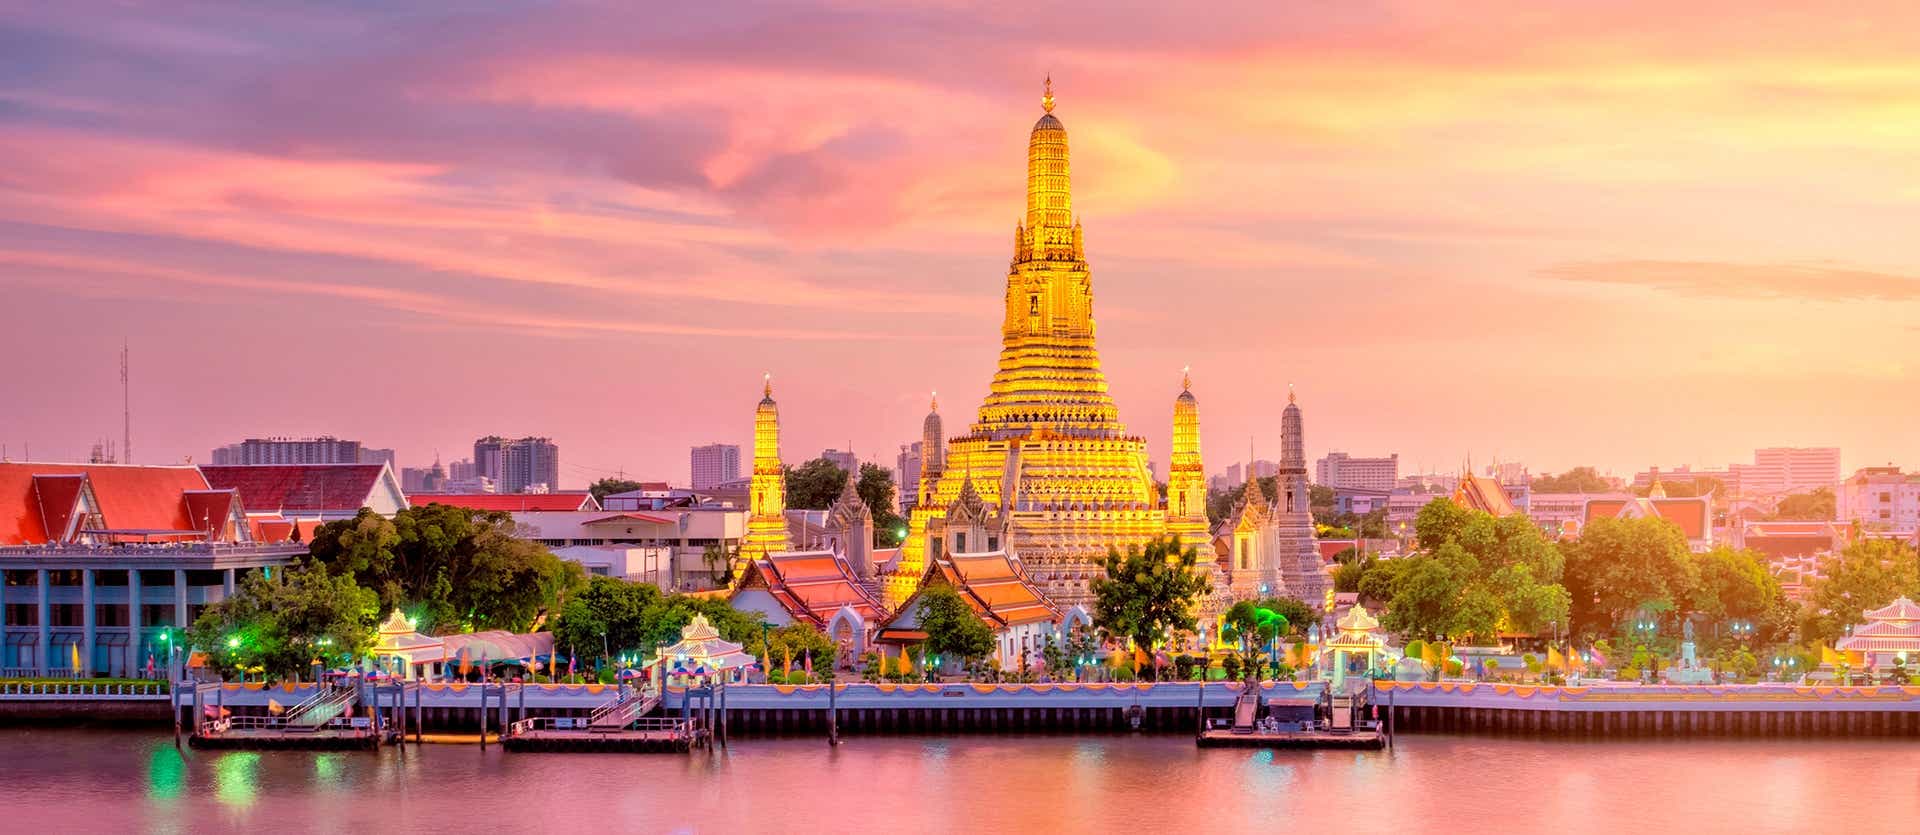 Templo Wat Arun <span class="iconos separador"></span> Bangkok